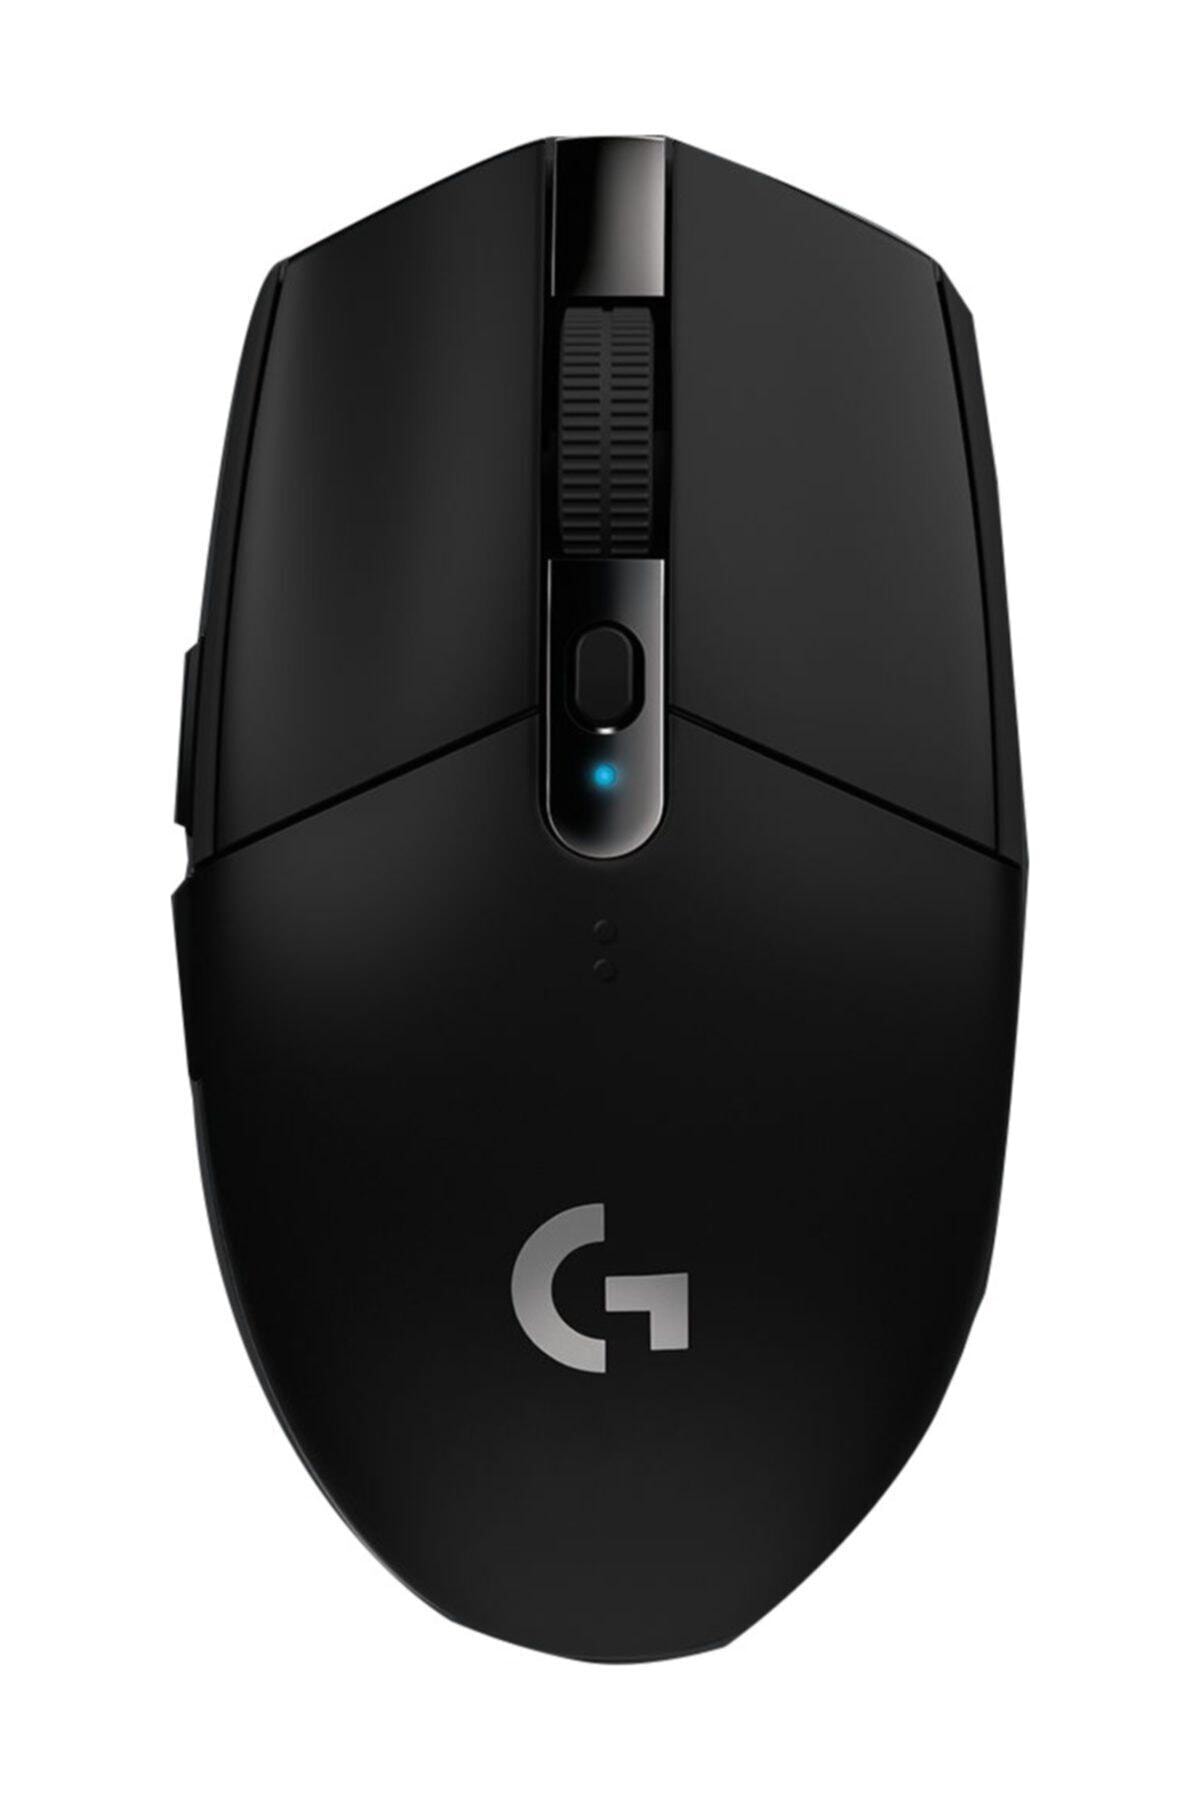 G G305 Lıghtspeed 12.000 Dpı Kablosuz Oyuncu Mouse - Siyah 910-005283